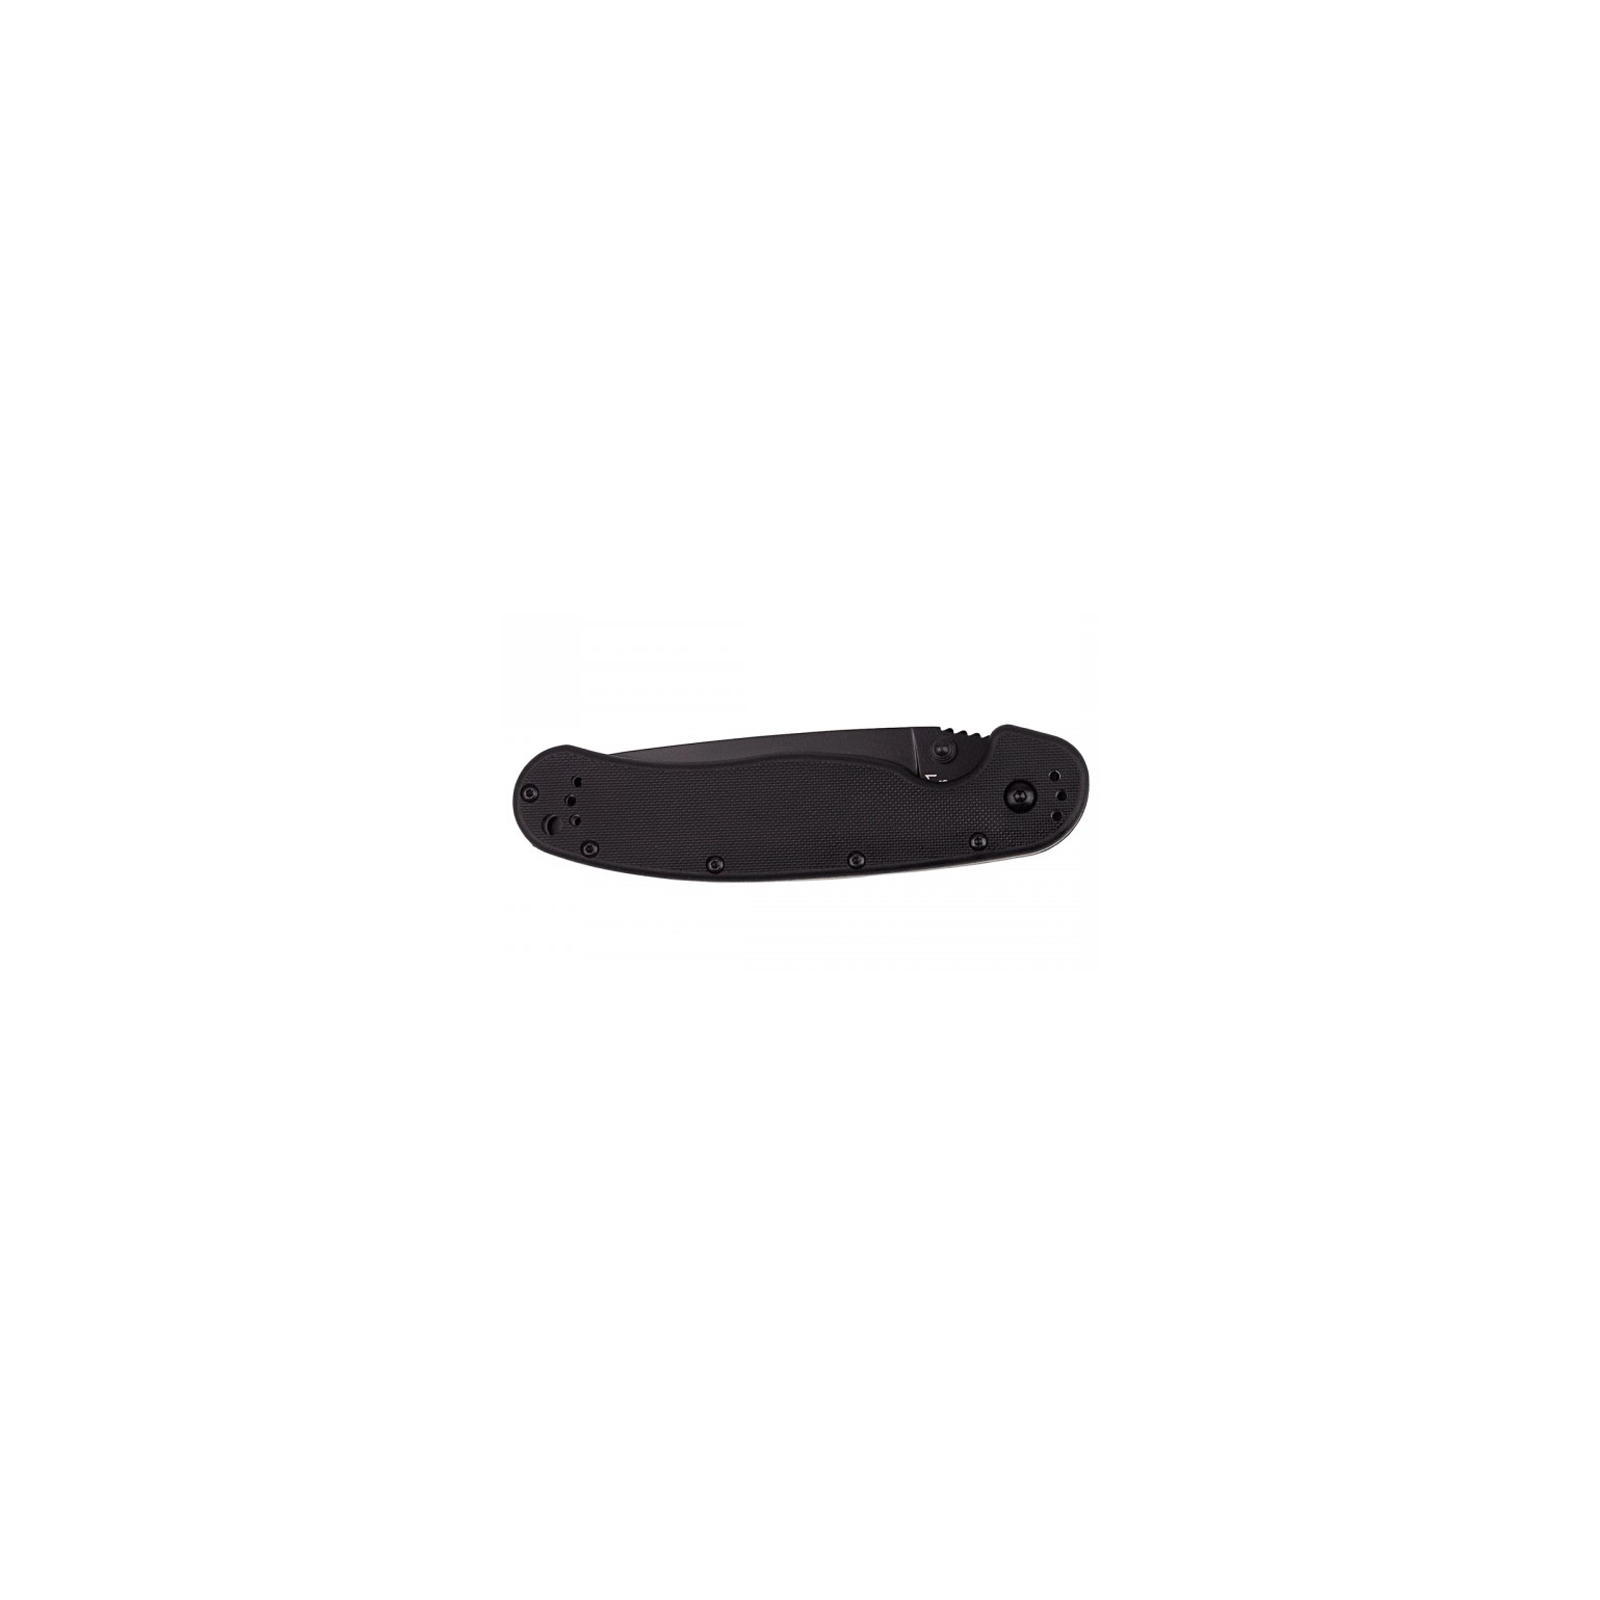 Нож Ontario RAT-1 Folder, черный, полусеррейтор (8847) изображение 4